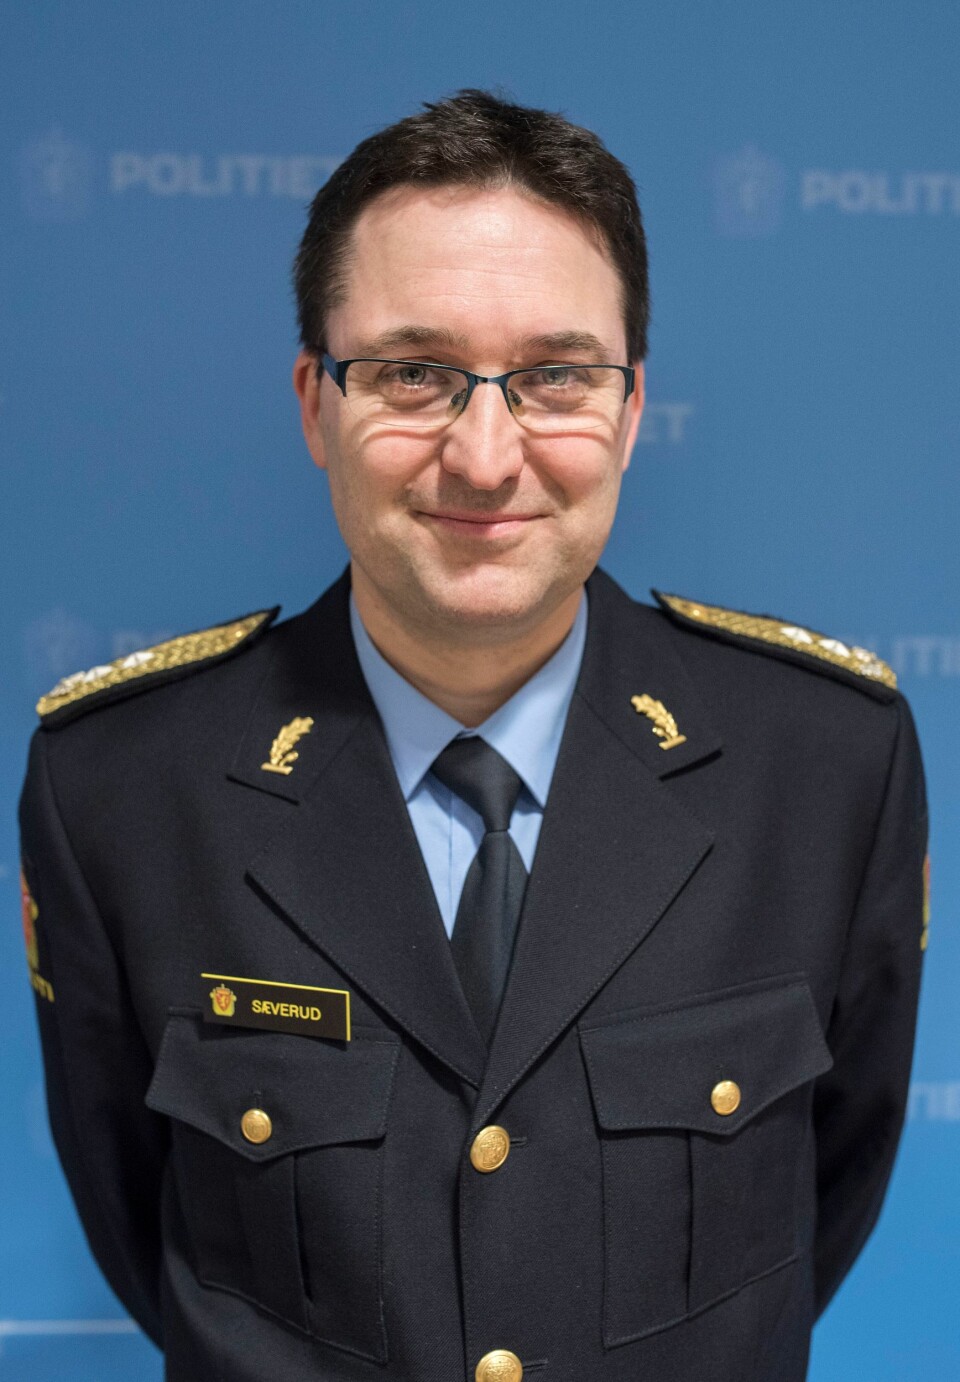 Ole Sæverud, politimester i Sør-Øst politidistrikt.